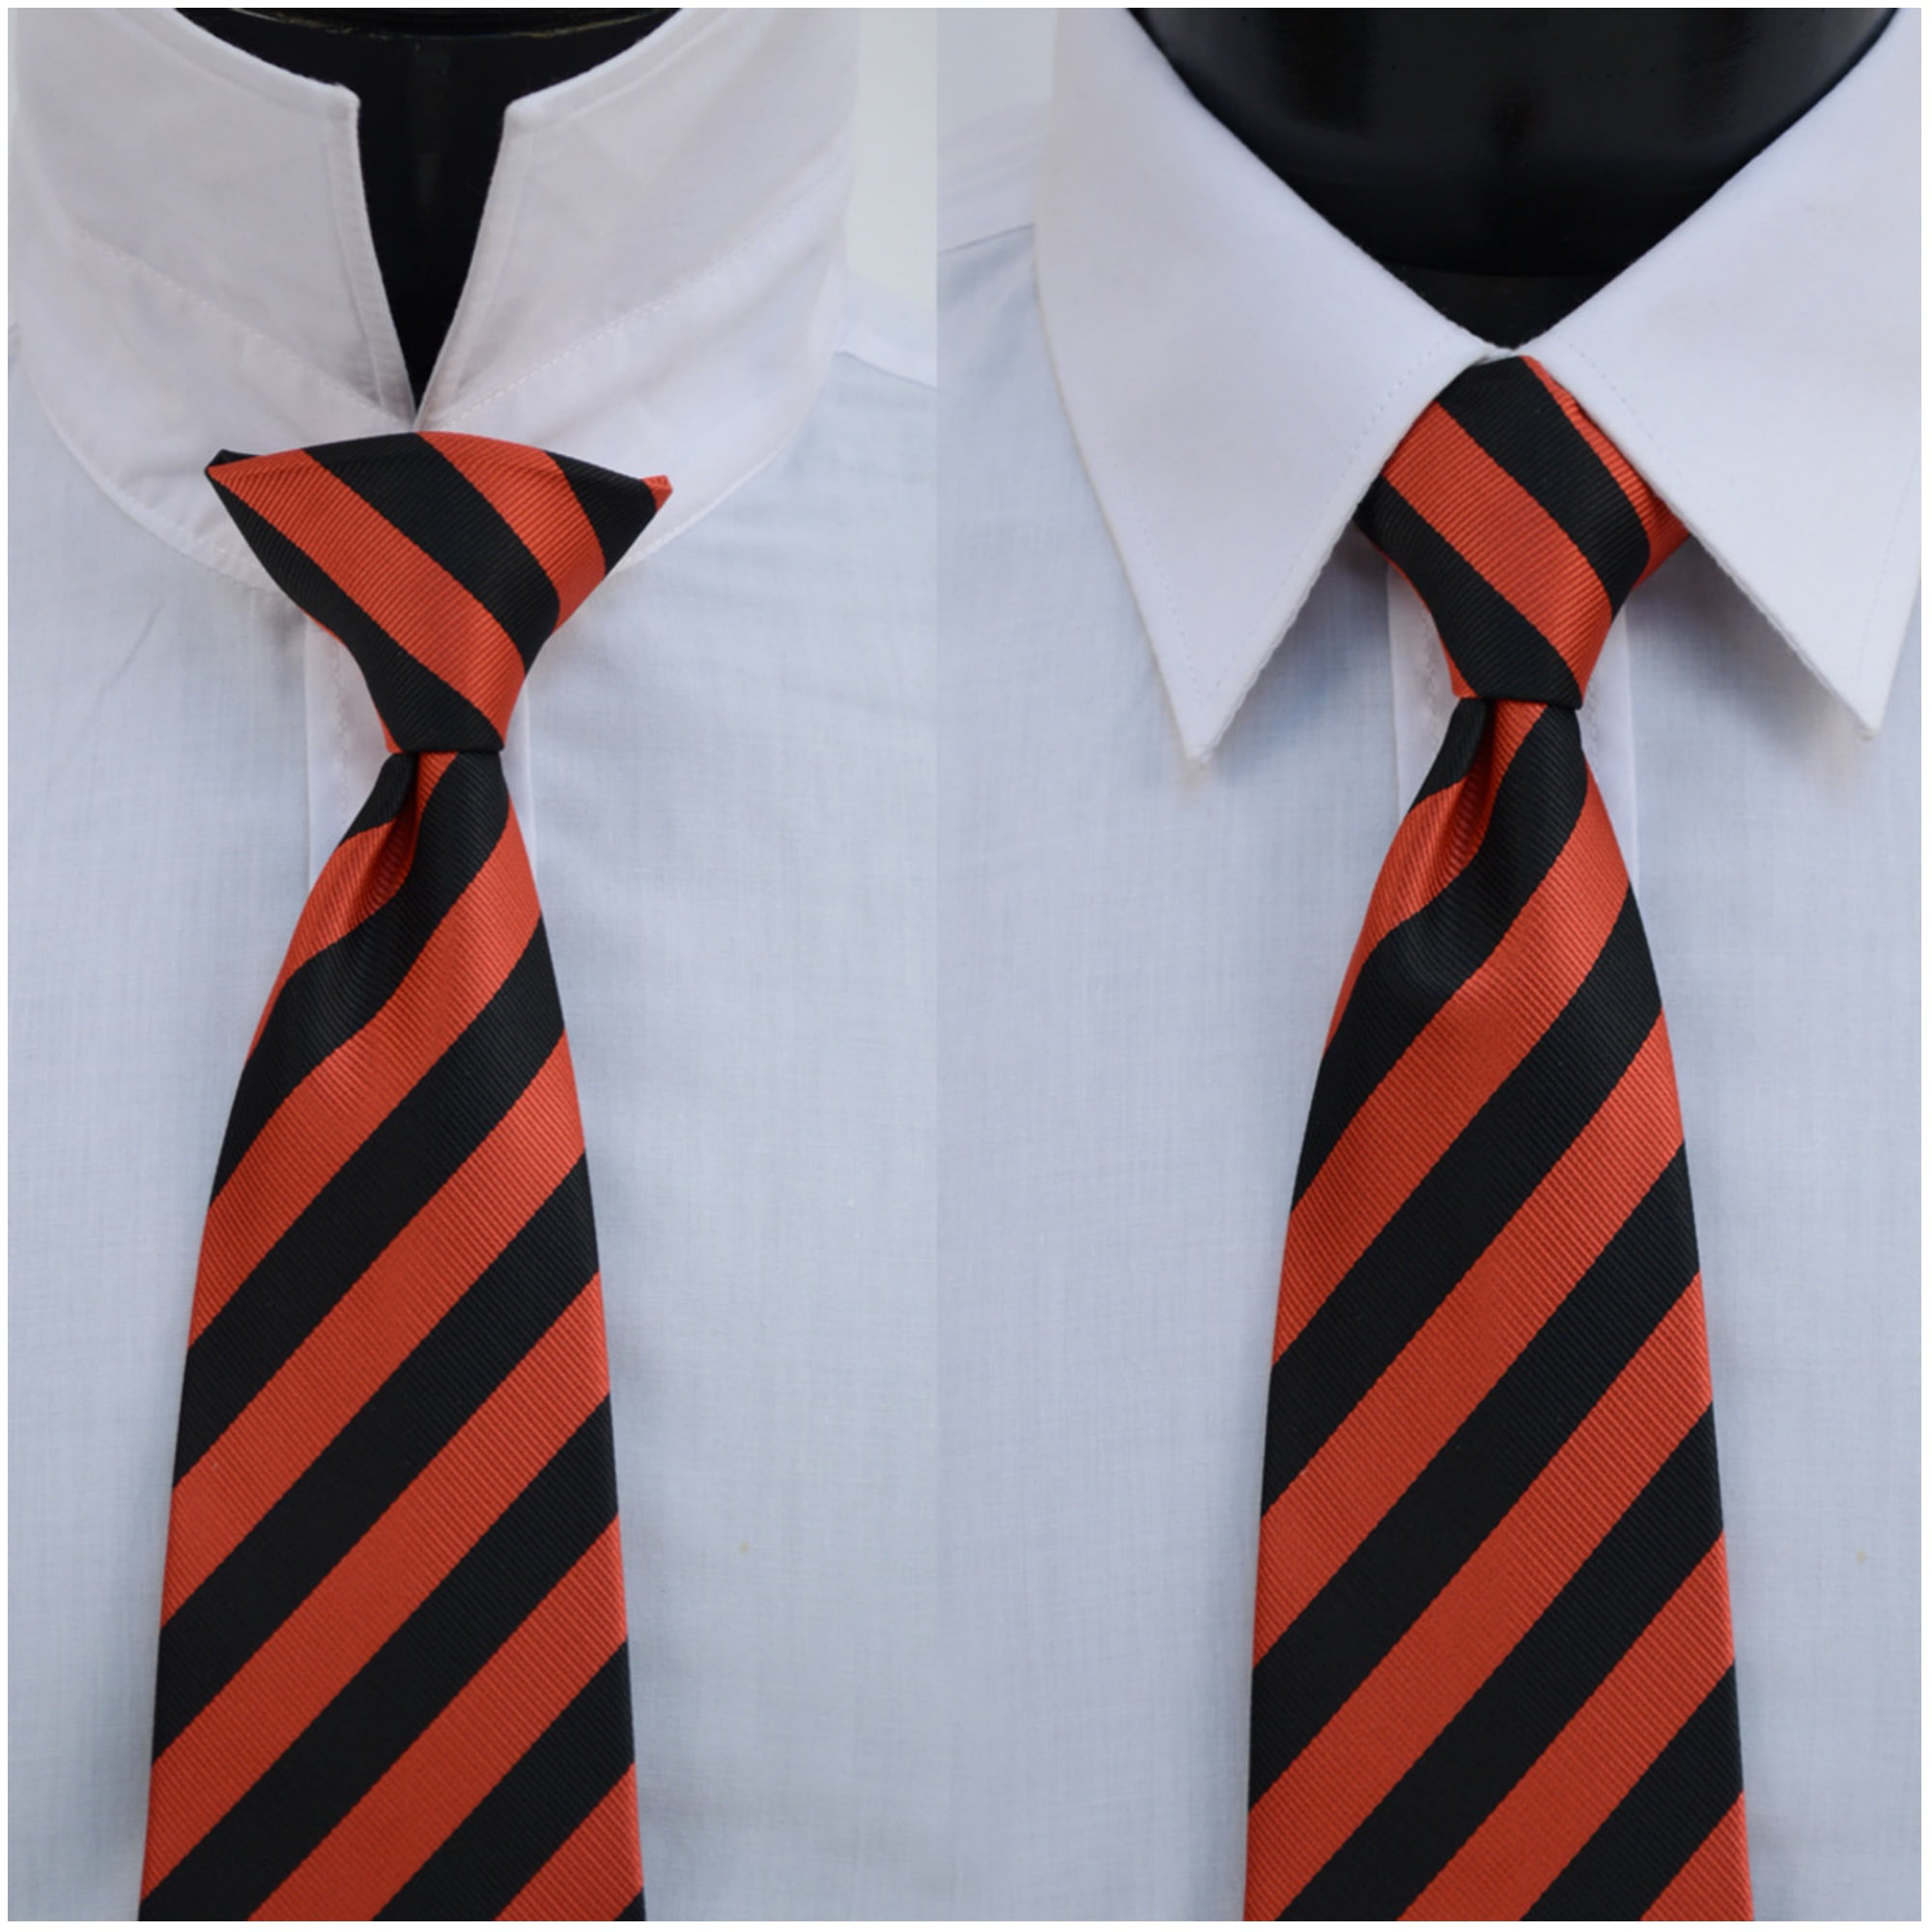 TheDapperTie Men's Black Solid Color Pre-tied Clip On Neck Ties